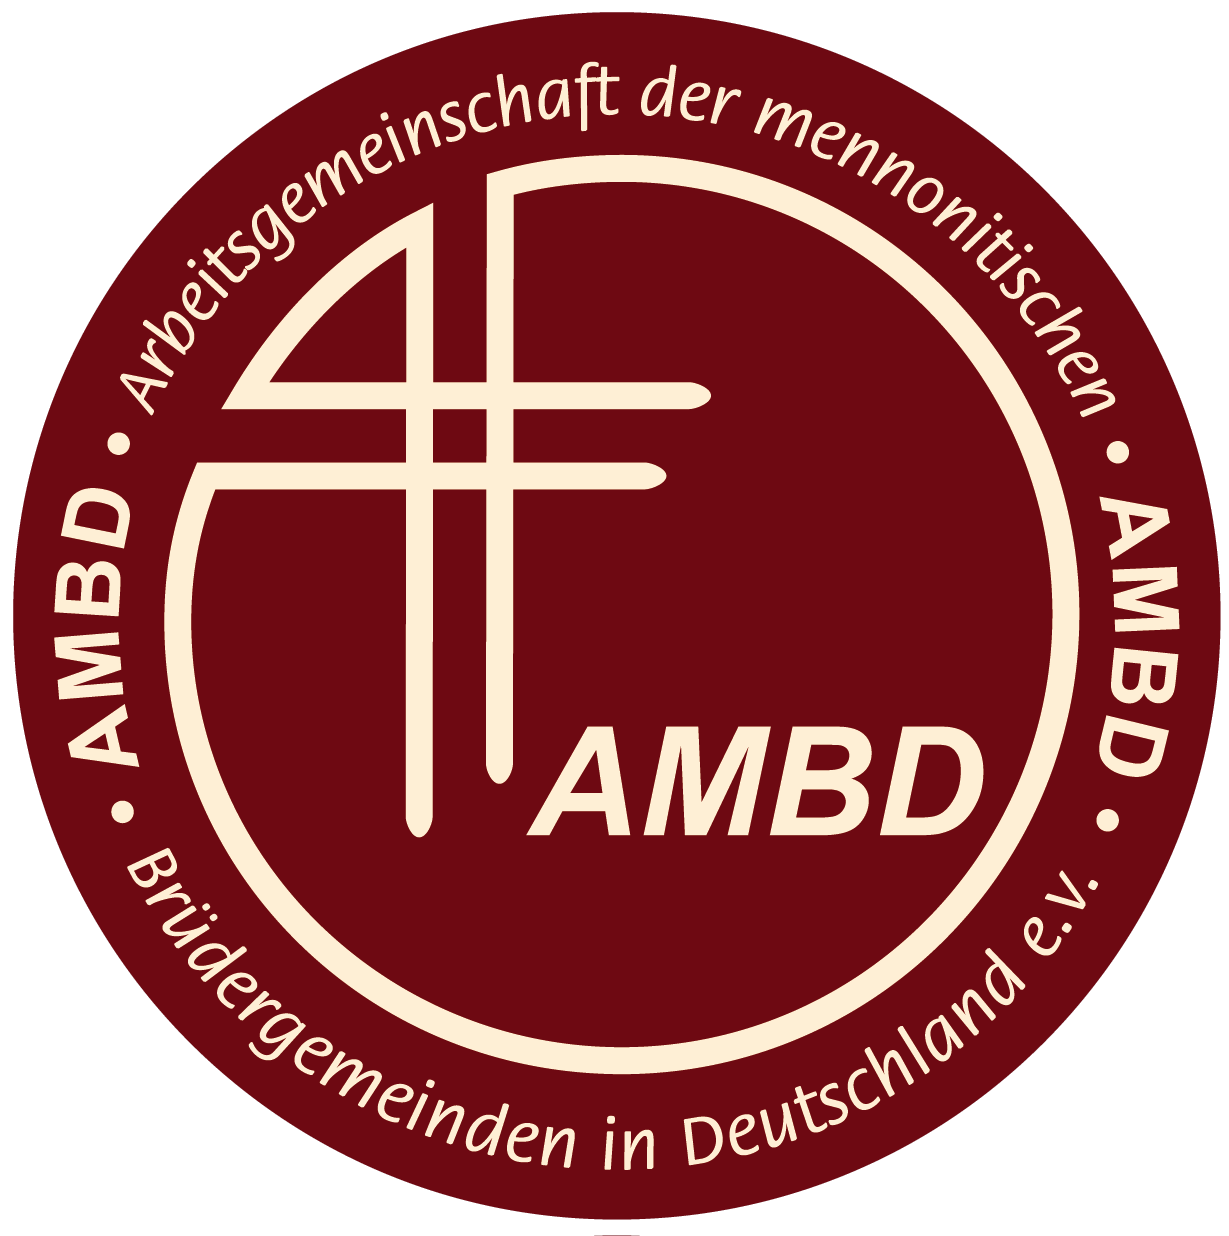 Arbeitsgemeinschaft Mennonitischer Brüdergemeinden in Deutschland (AMBD), Mennonite Brethren Church, Mennonitische Brüdergemeinde,